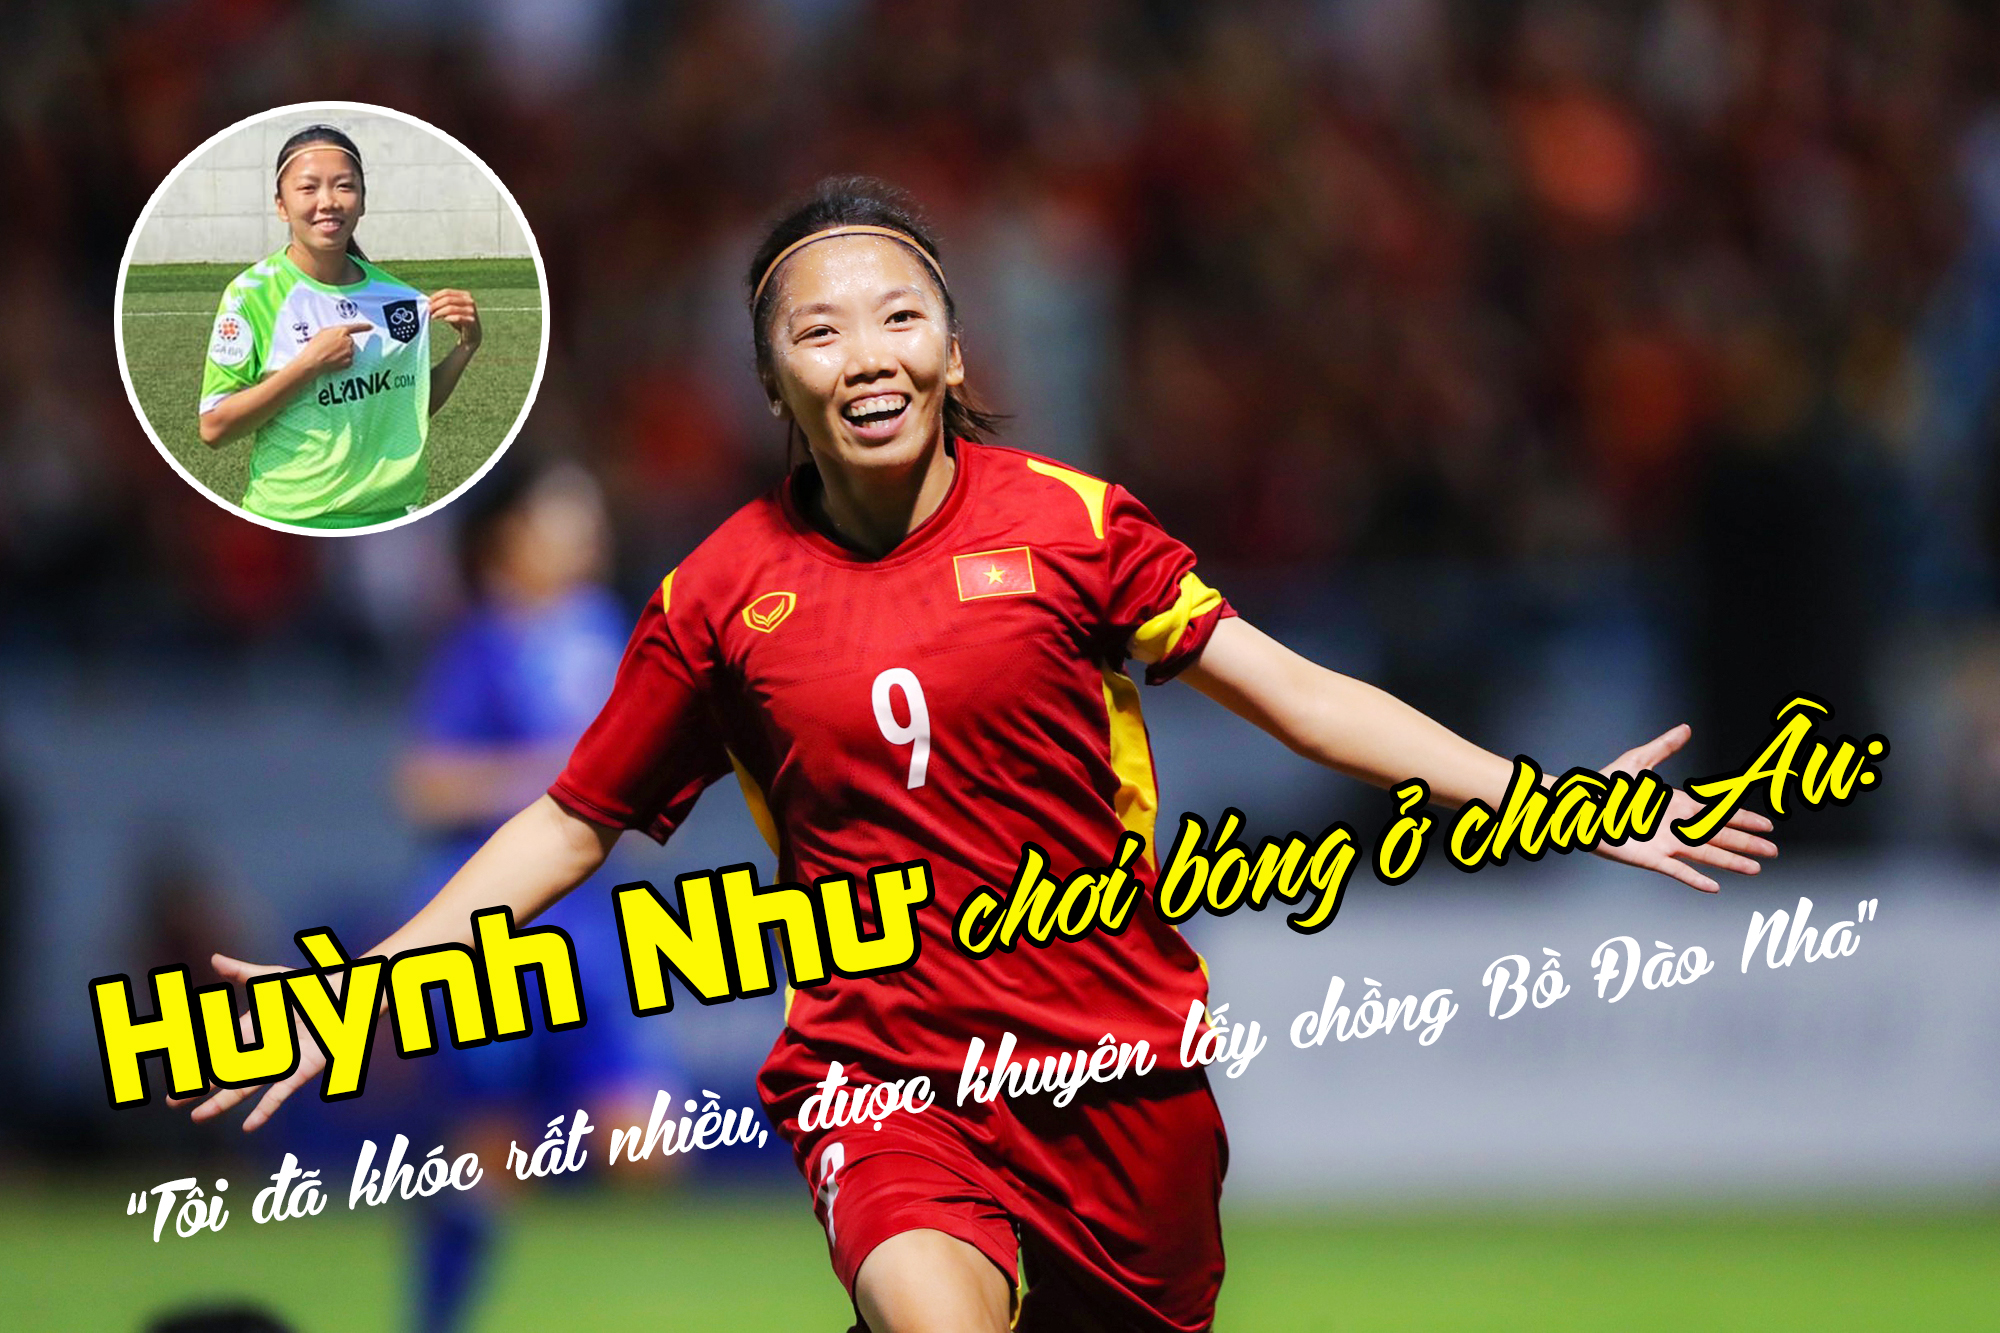 Huỳnh Như chơi bóng ở châu Âu: “Tôi đã khóc rất nhiều, được khuyên lấy chồng Bồ Đào Nha” - 1